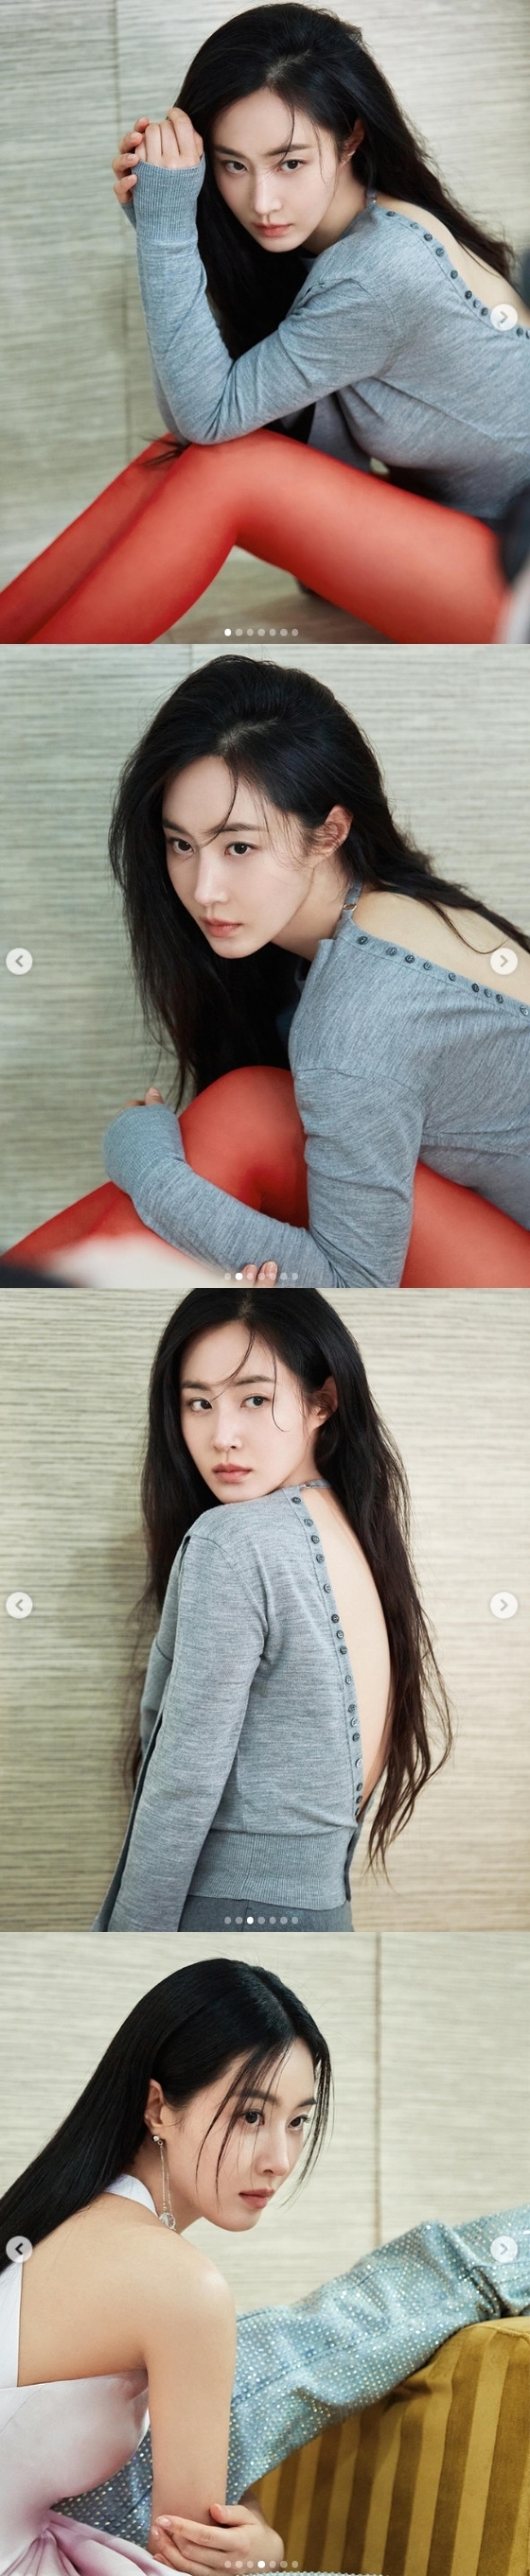 소녀시대 권유리, 레드 스타킹으로 섹시+청순 매력 발산